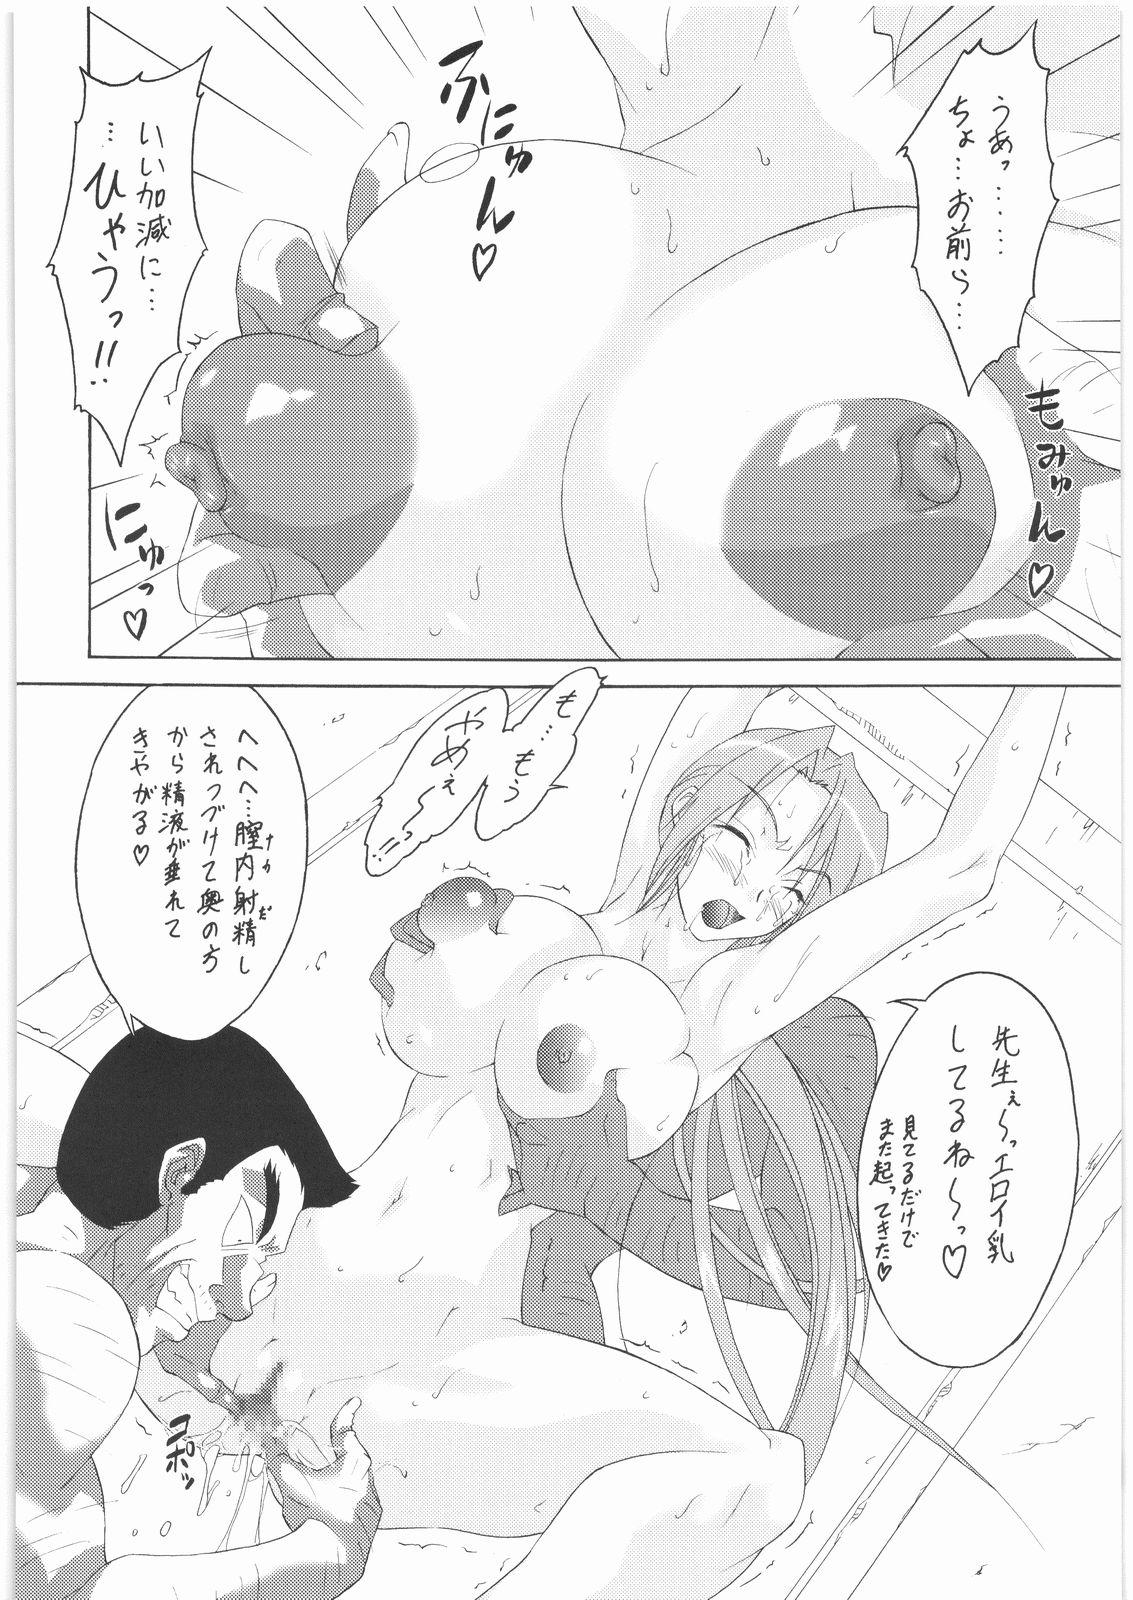 Boy Fuck Girl Konata no Maruhi Baito - Lucky star Classy - Page 5